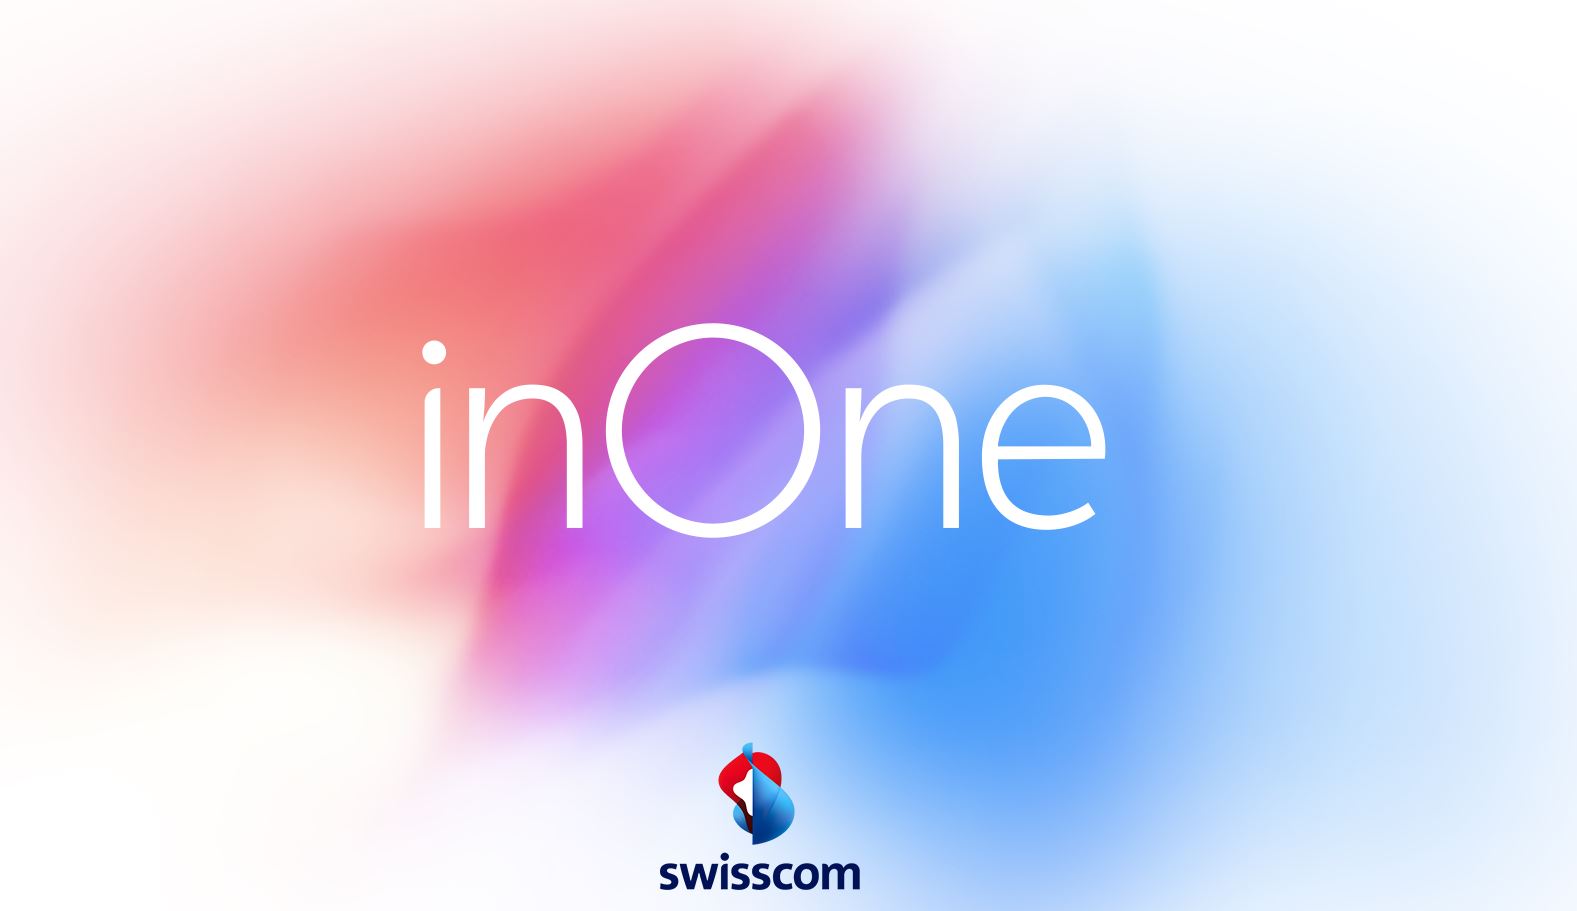 Swisscom erlaubt mit neuem Abo die gleichzeitige Nutzung mehrerer Geraete - Bild 1